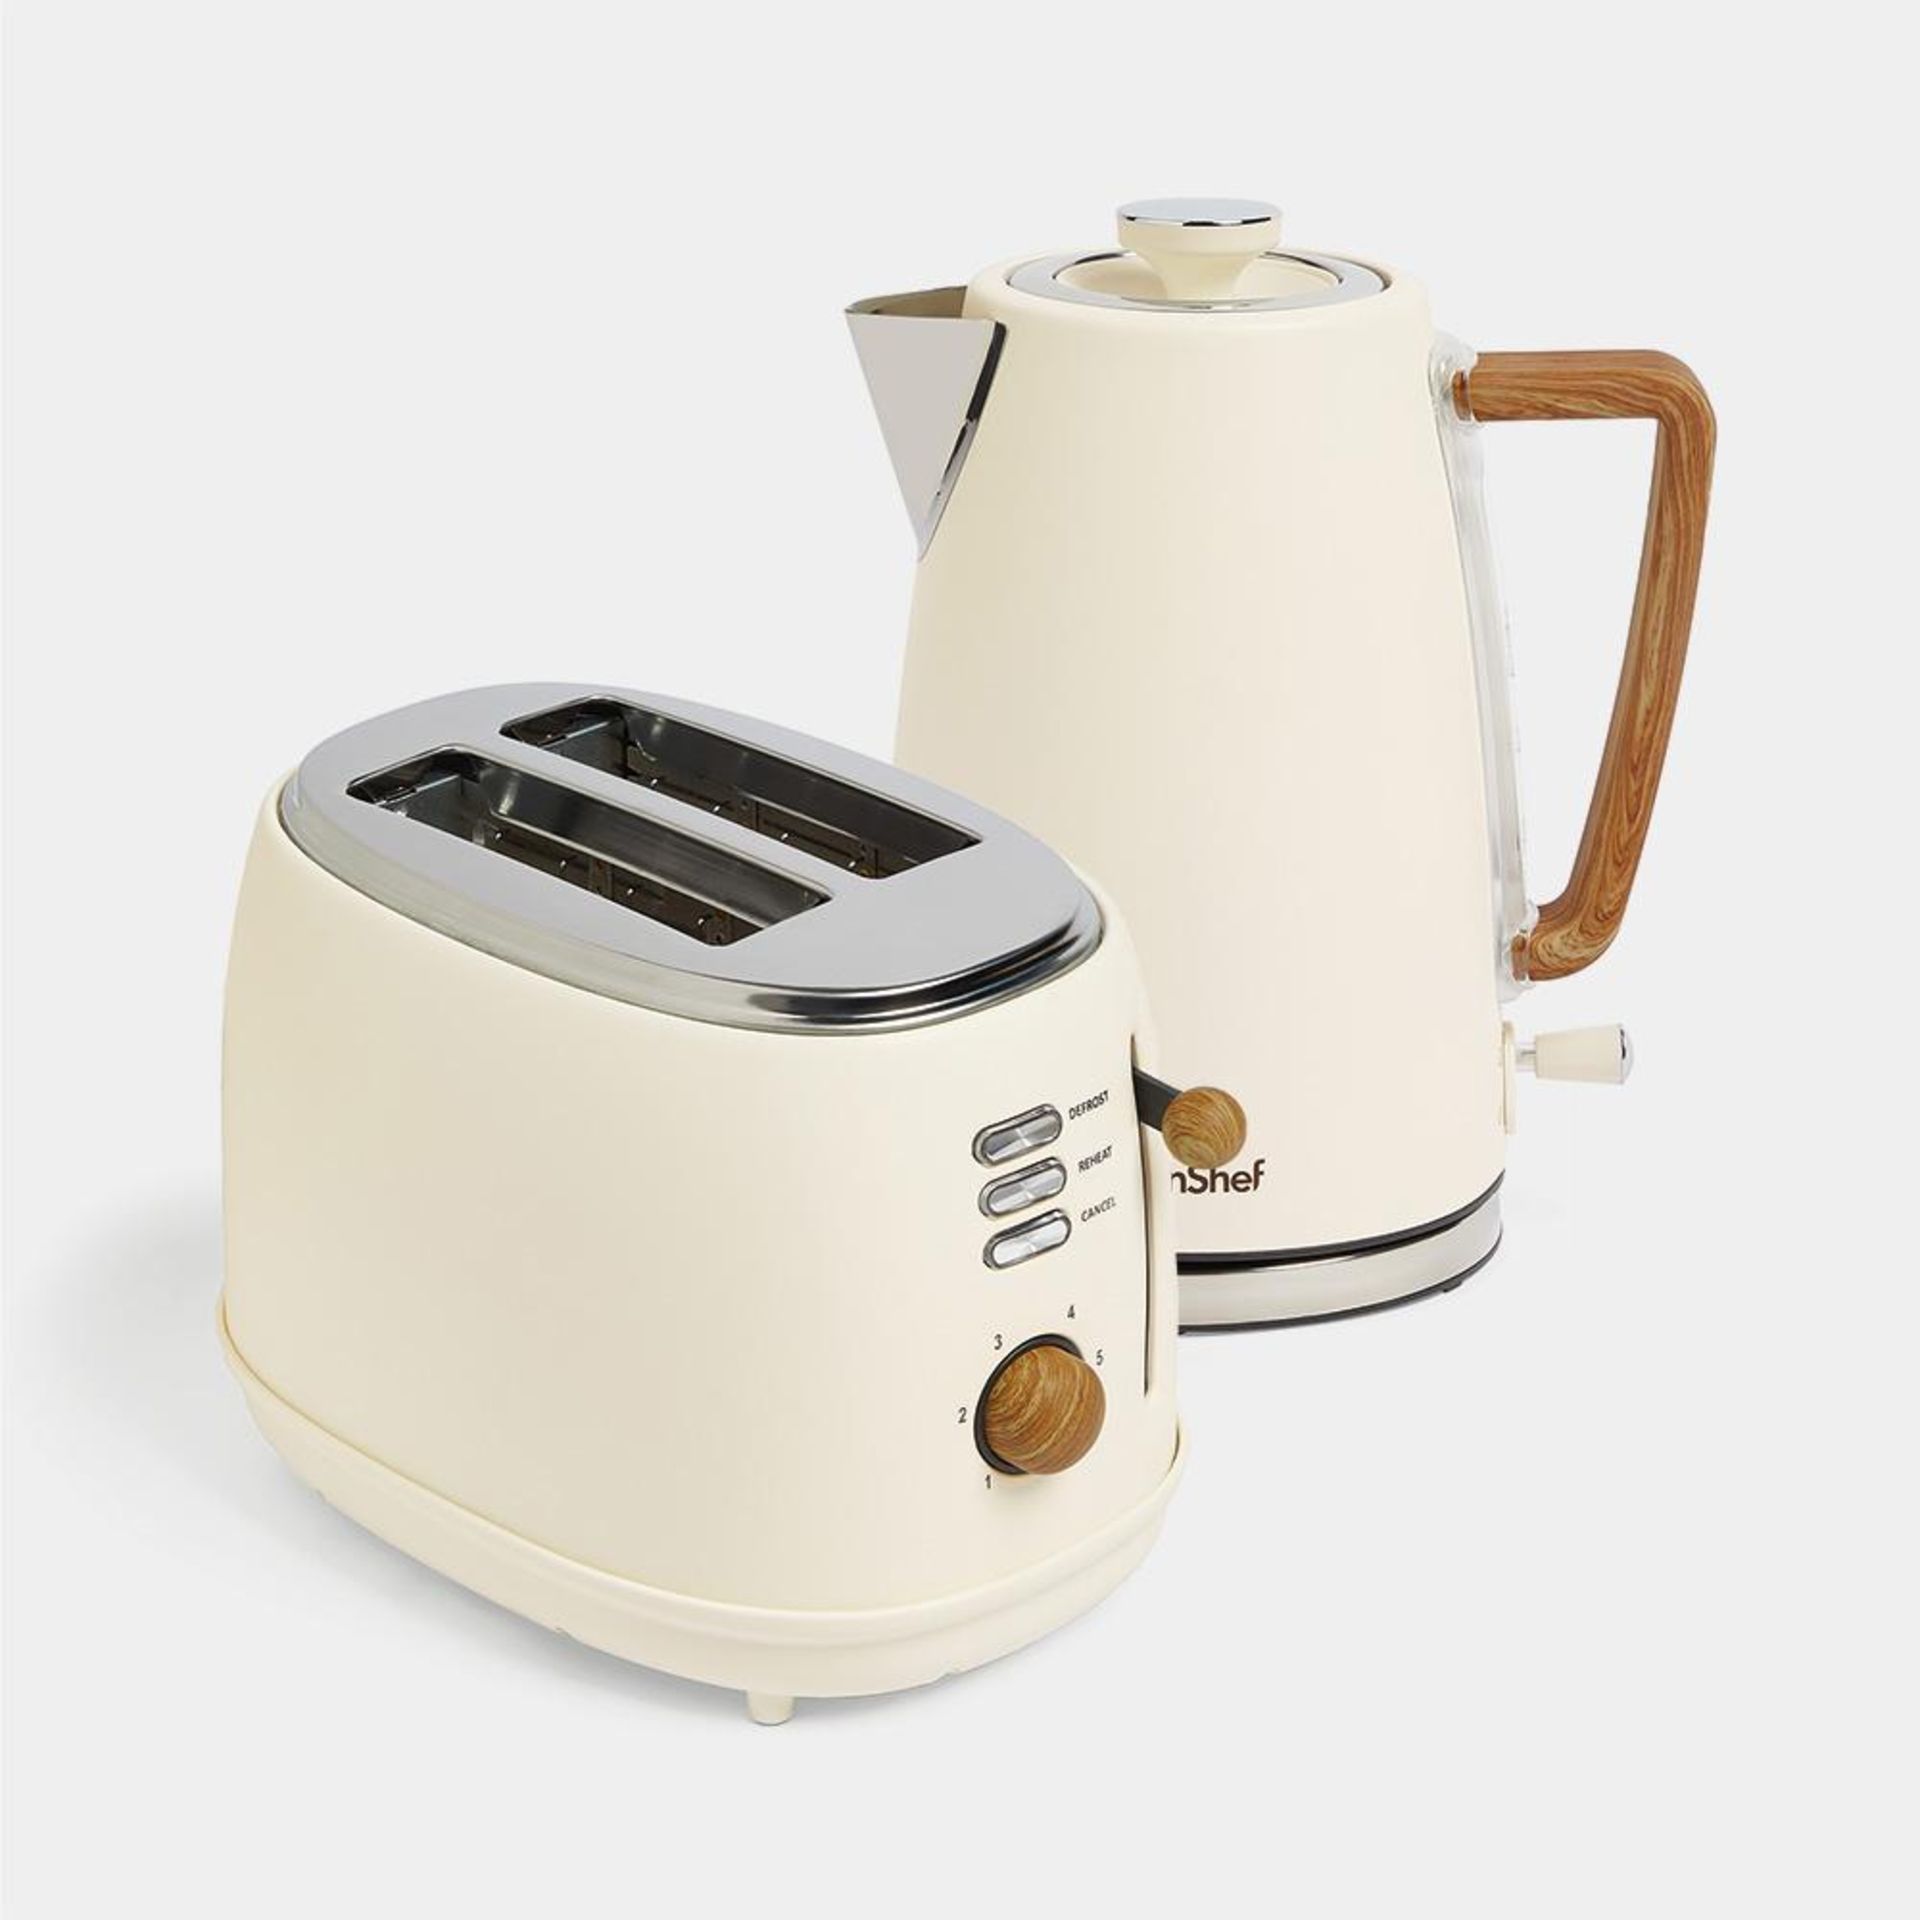 Cream & Wood Kettle & Toaster Set - VonHaus - ER51. Cream & Wood Kettle & Toaster SetWith a Nordic-